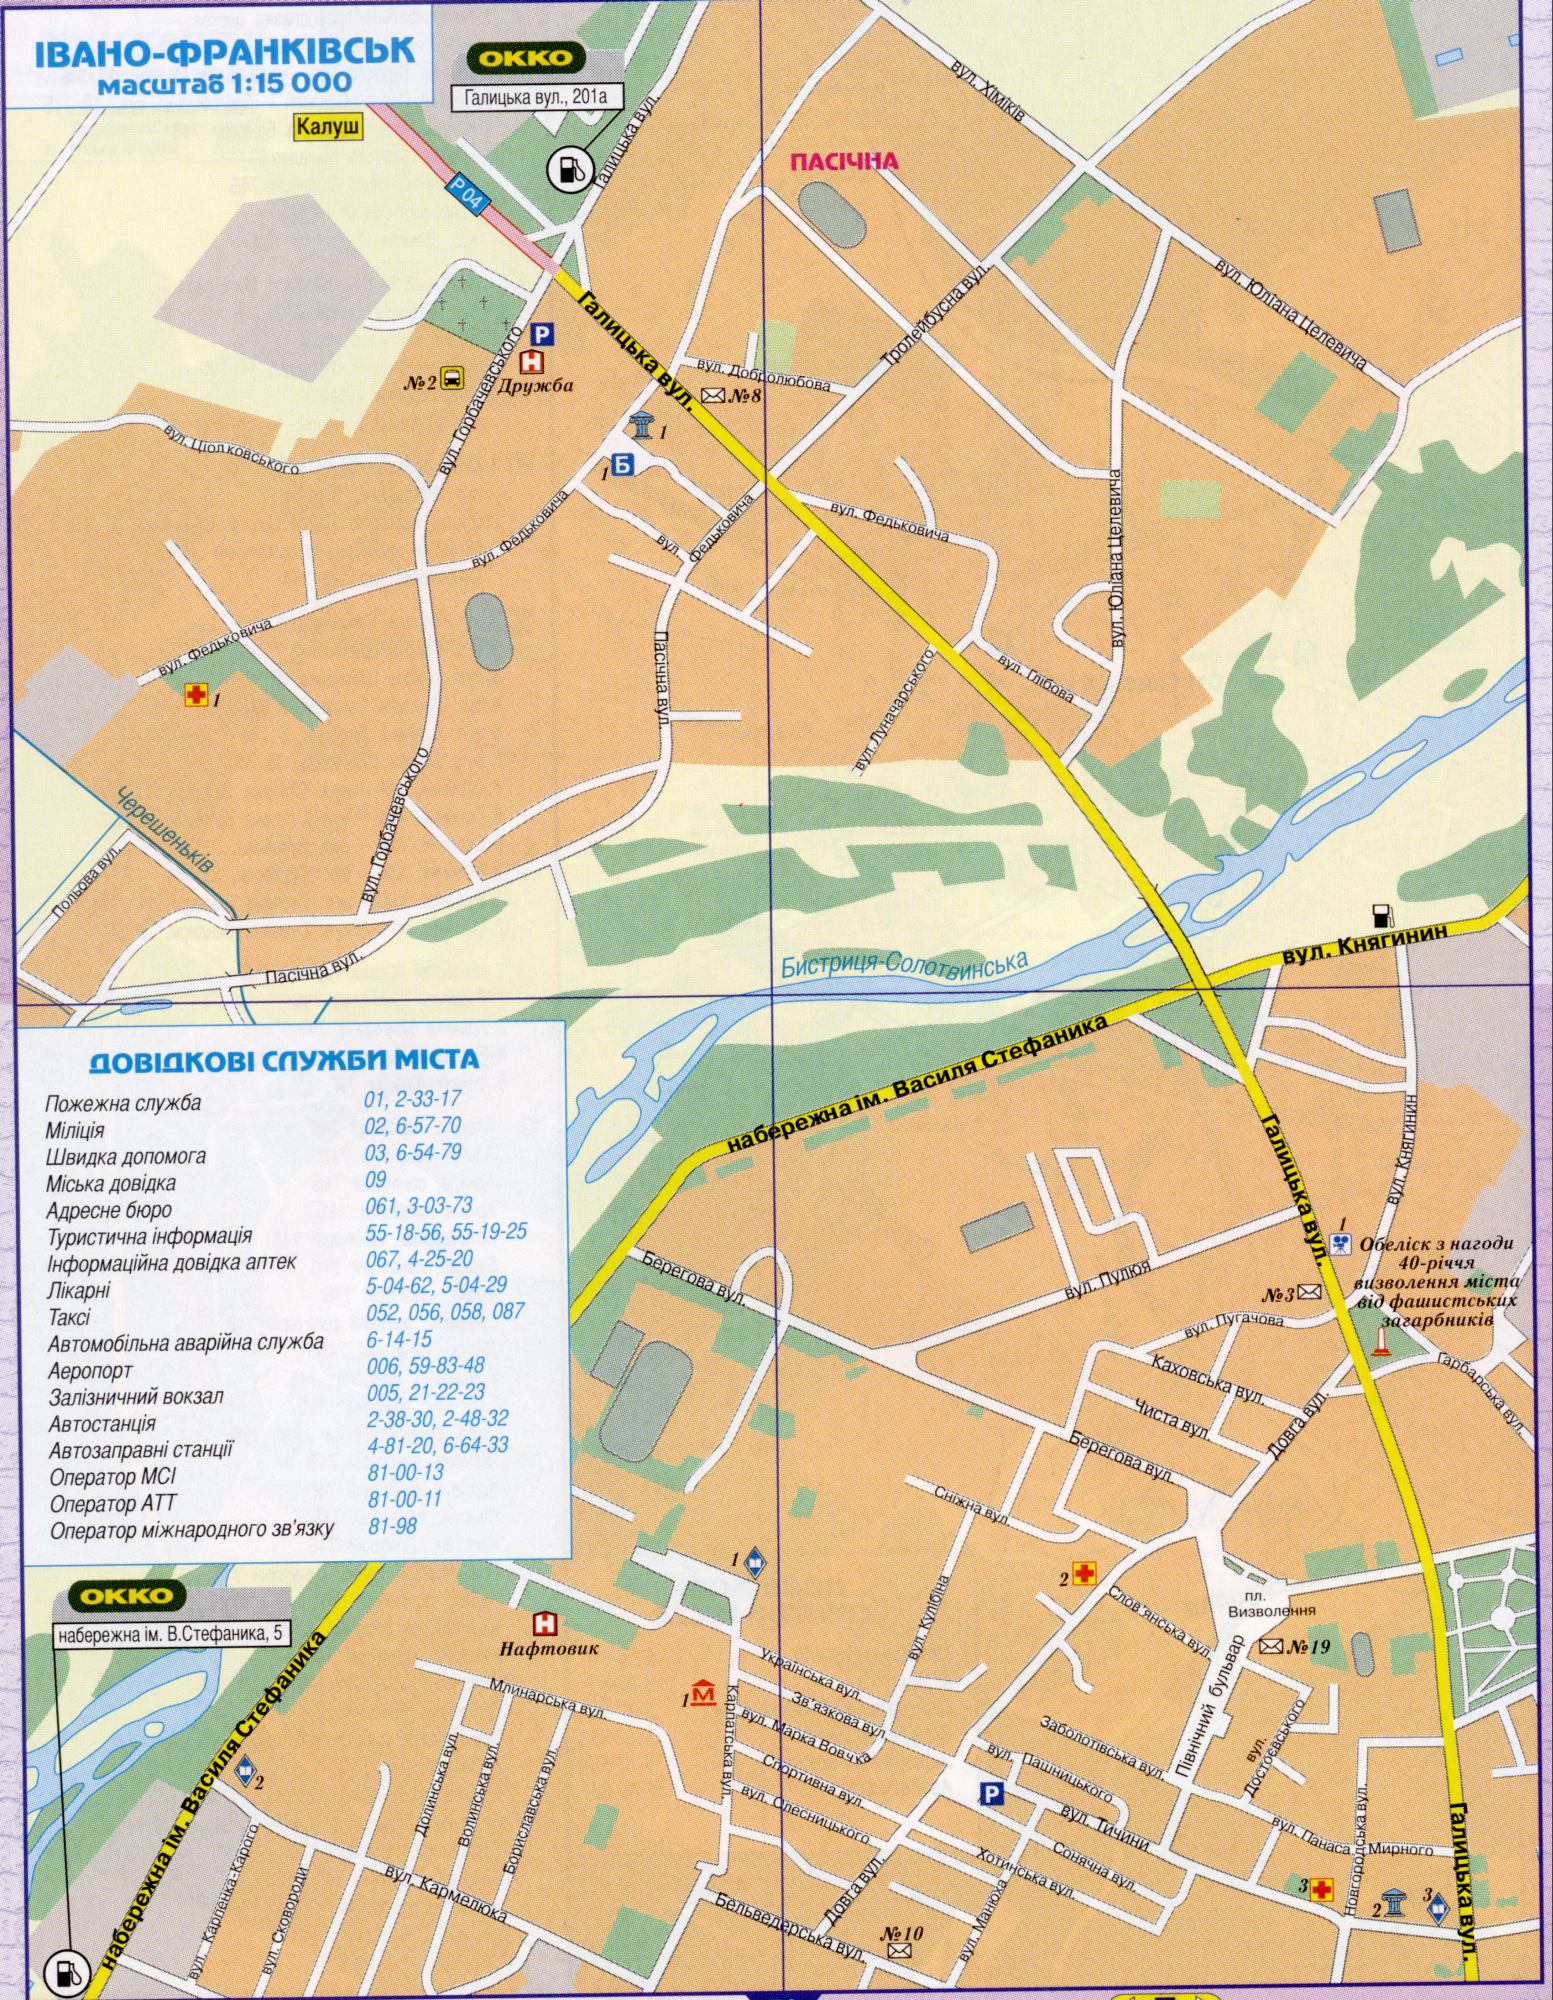 Karte von Ivano-Frankivsk, einen detaillierten Plan der Stadt Iwano-Frankiwsk Maßstab 1cm-150metrov. Kostenlos herunterladen